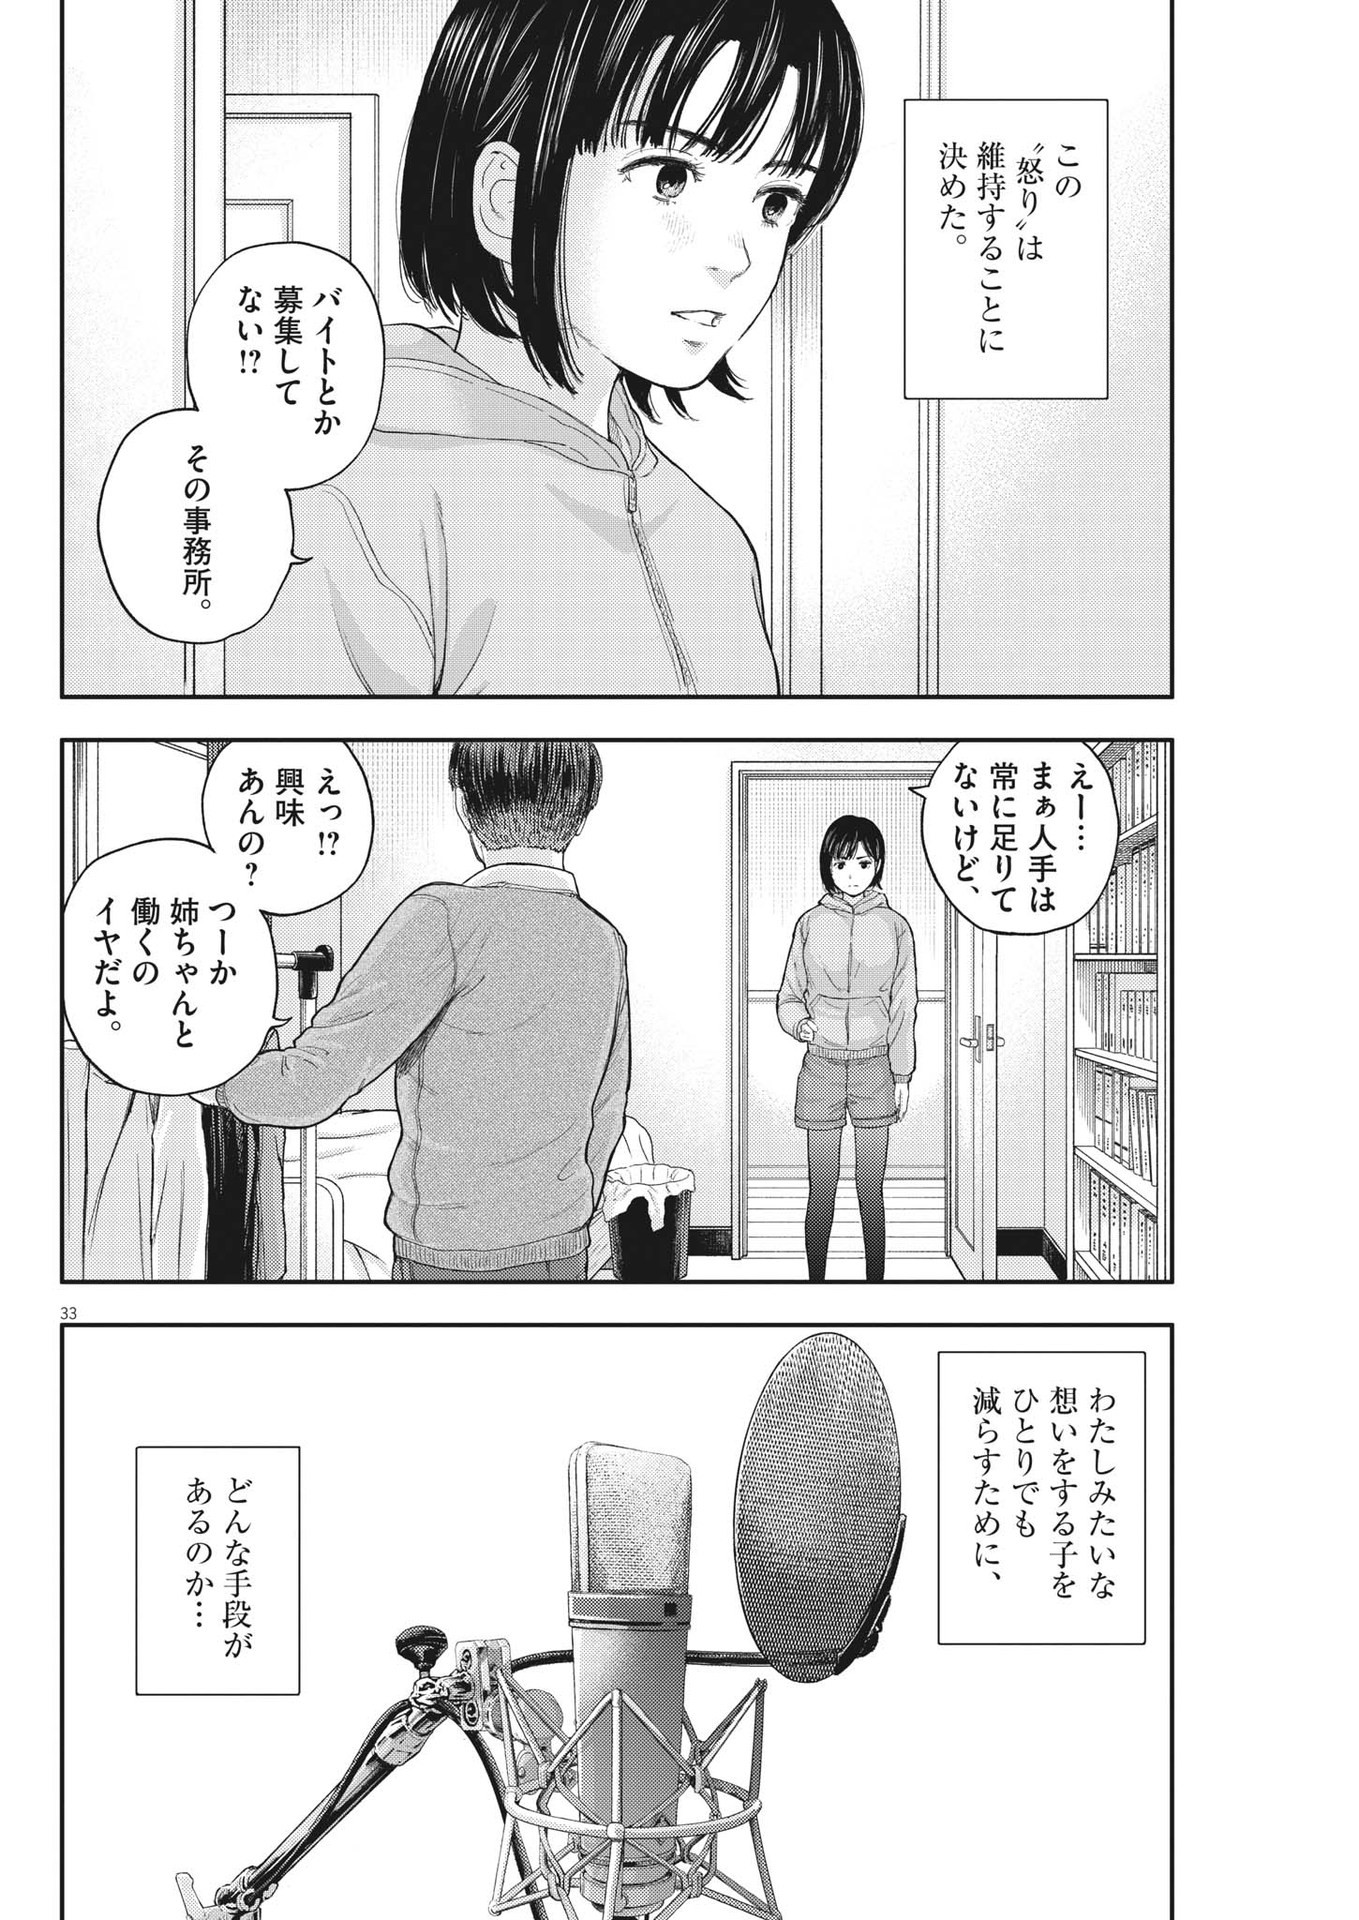 Yumenashi-sensei no Shinroshidou - Chapter 2 - Page 33